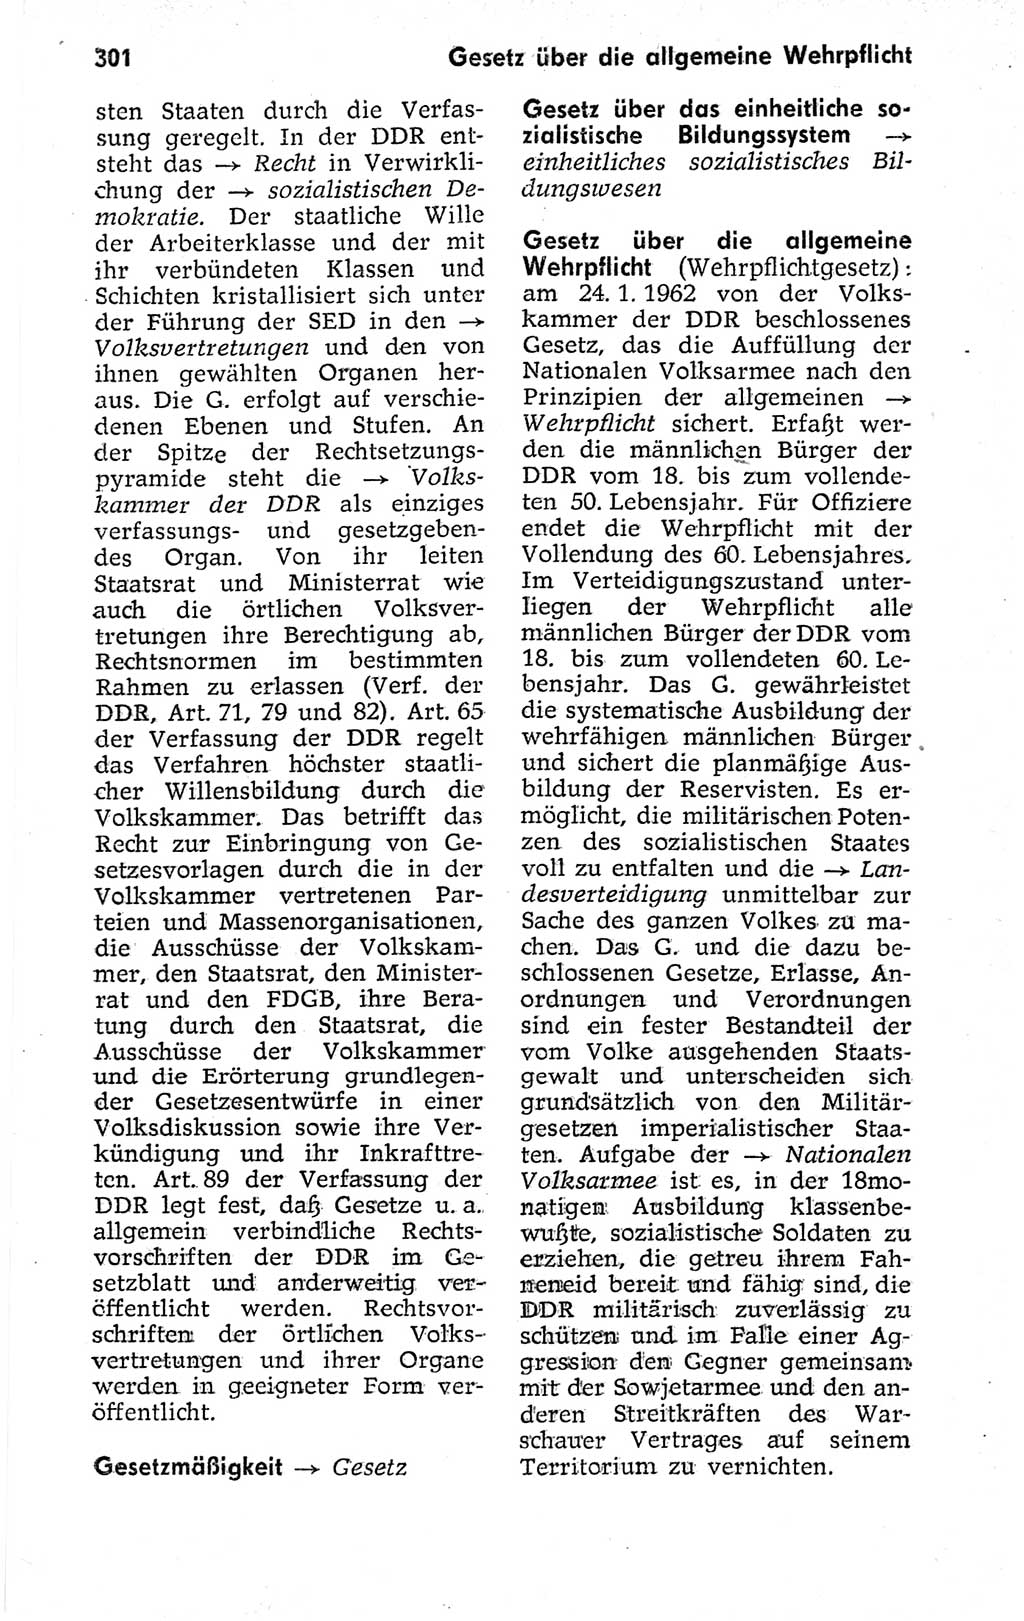 Kleines politisches Wörterbuch [Deutsche Demokratische Republik (DDR)] 1973, Seite 301 (Kl. pol. Wb. DDR 1973, S. 301)